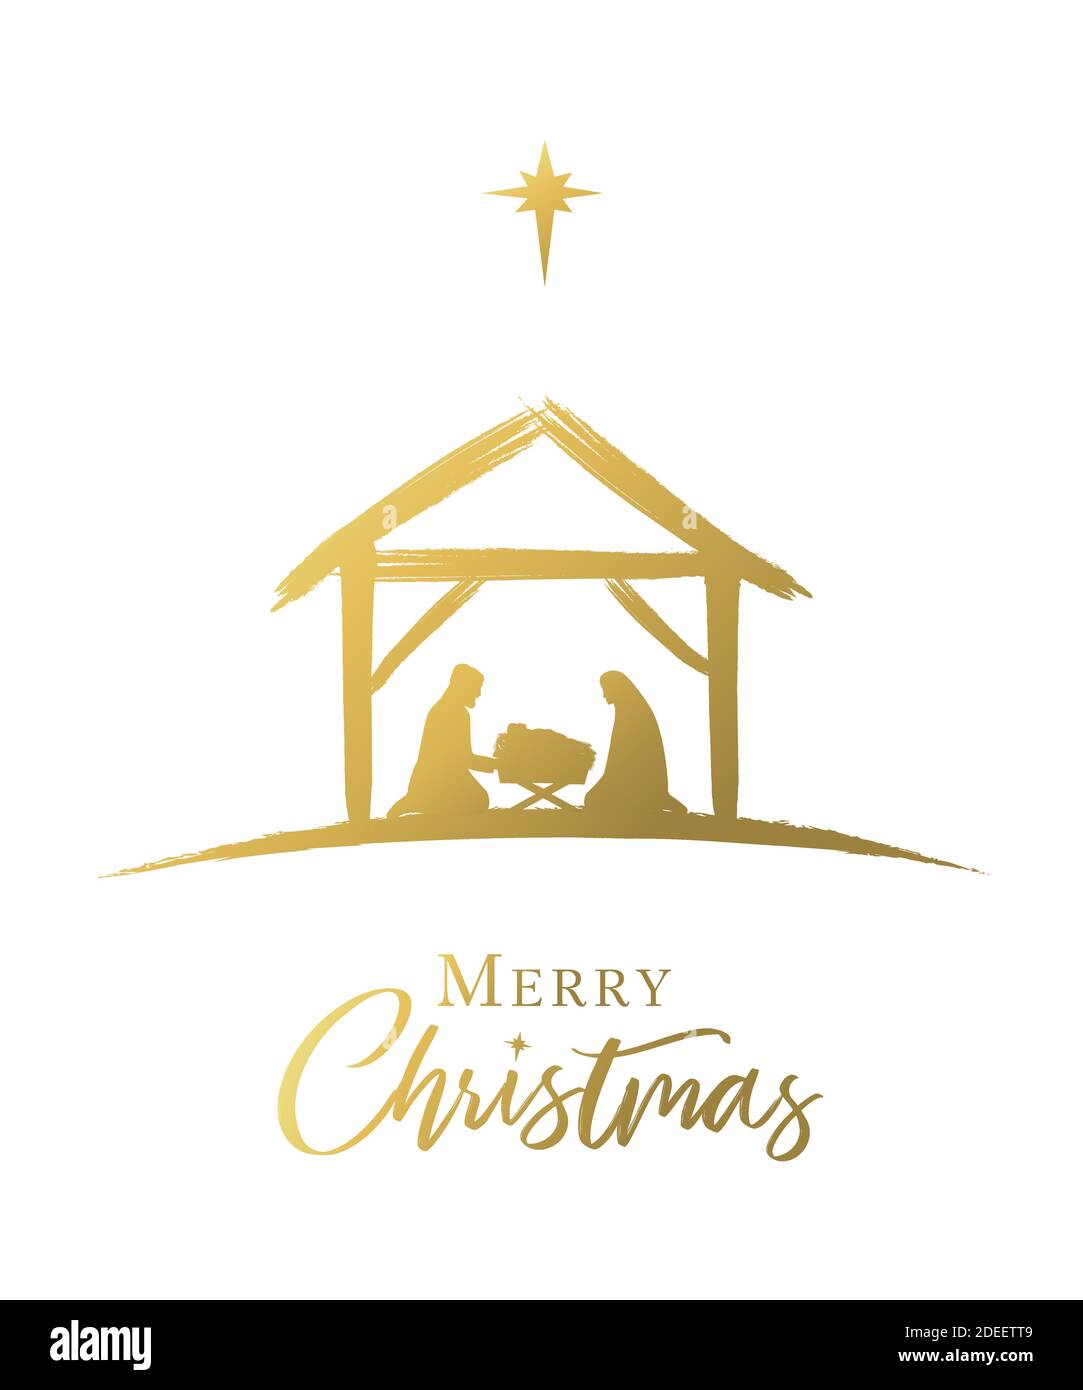 Frohe Weihnachten, Krippe des Jesusbabys in der Krippe goldene Farbe. Die Geburt Christi, Heilige Familie und Stern von Bethlehem, Grußkarten-Design Stock Vektor